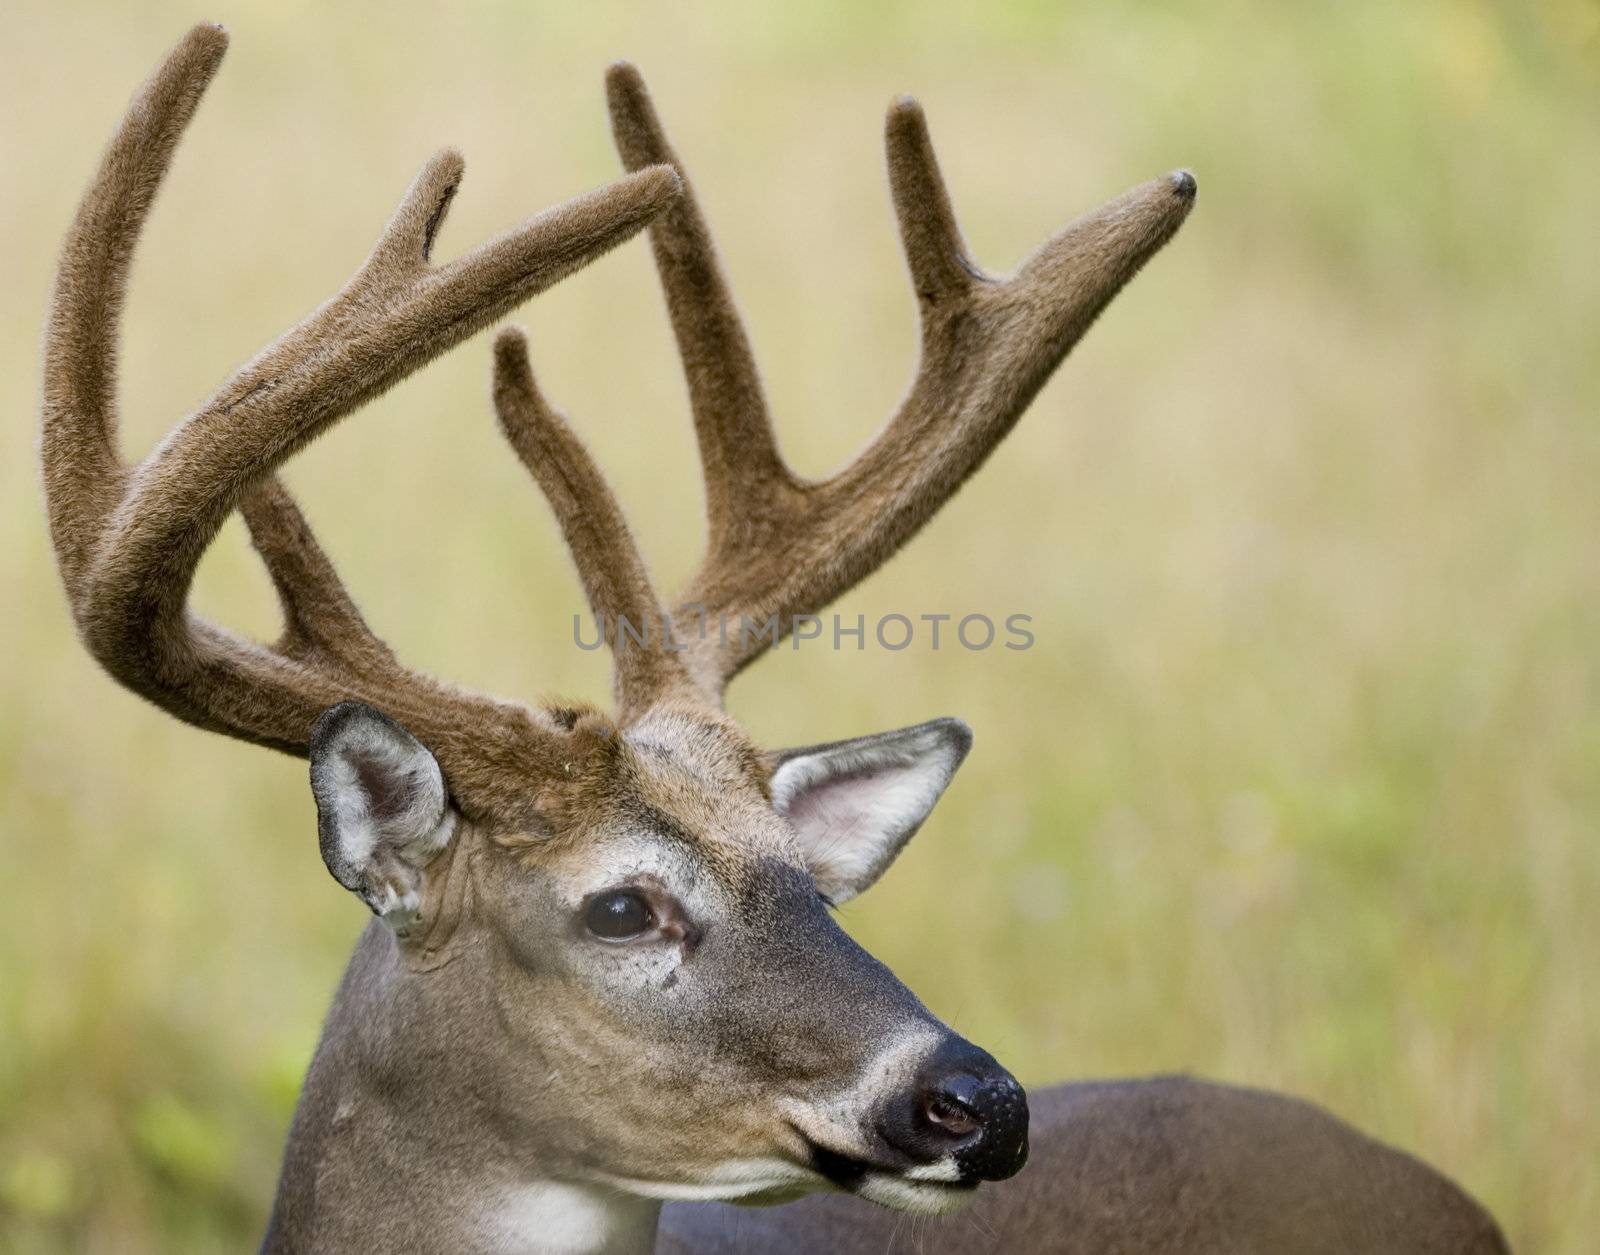 Whitetail deer buck in summer velvet.